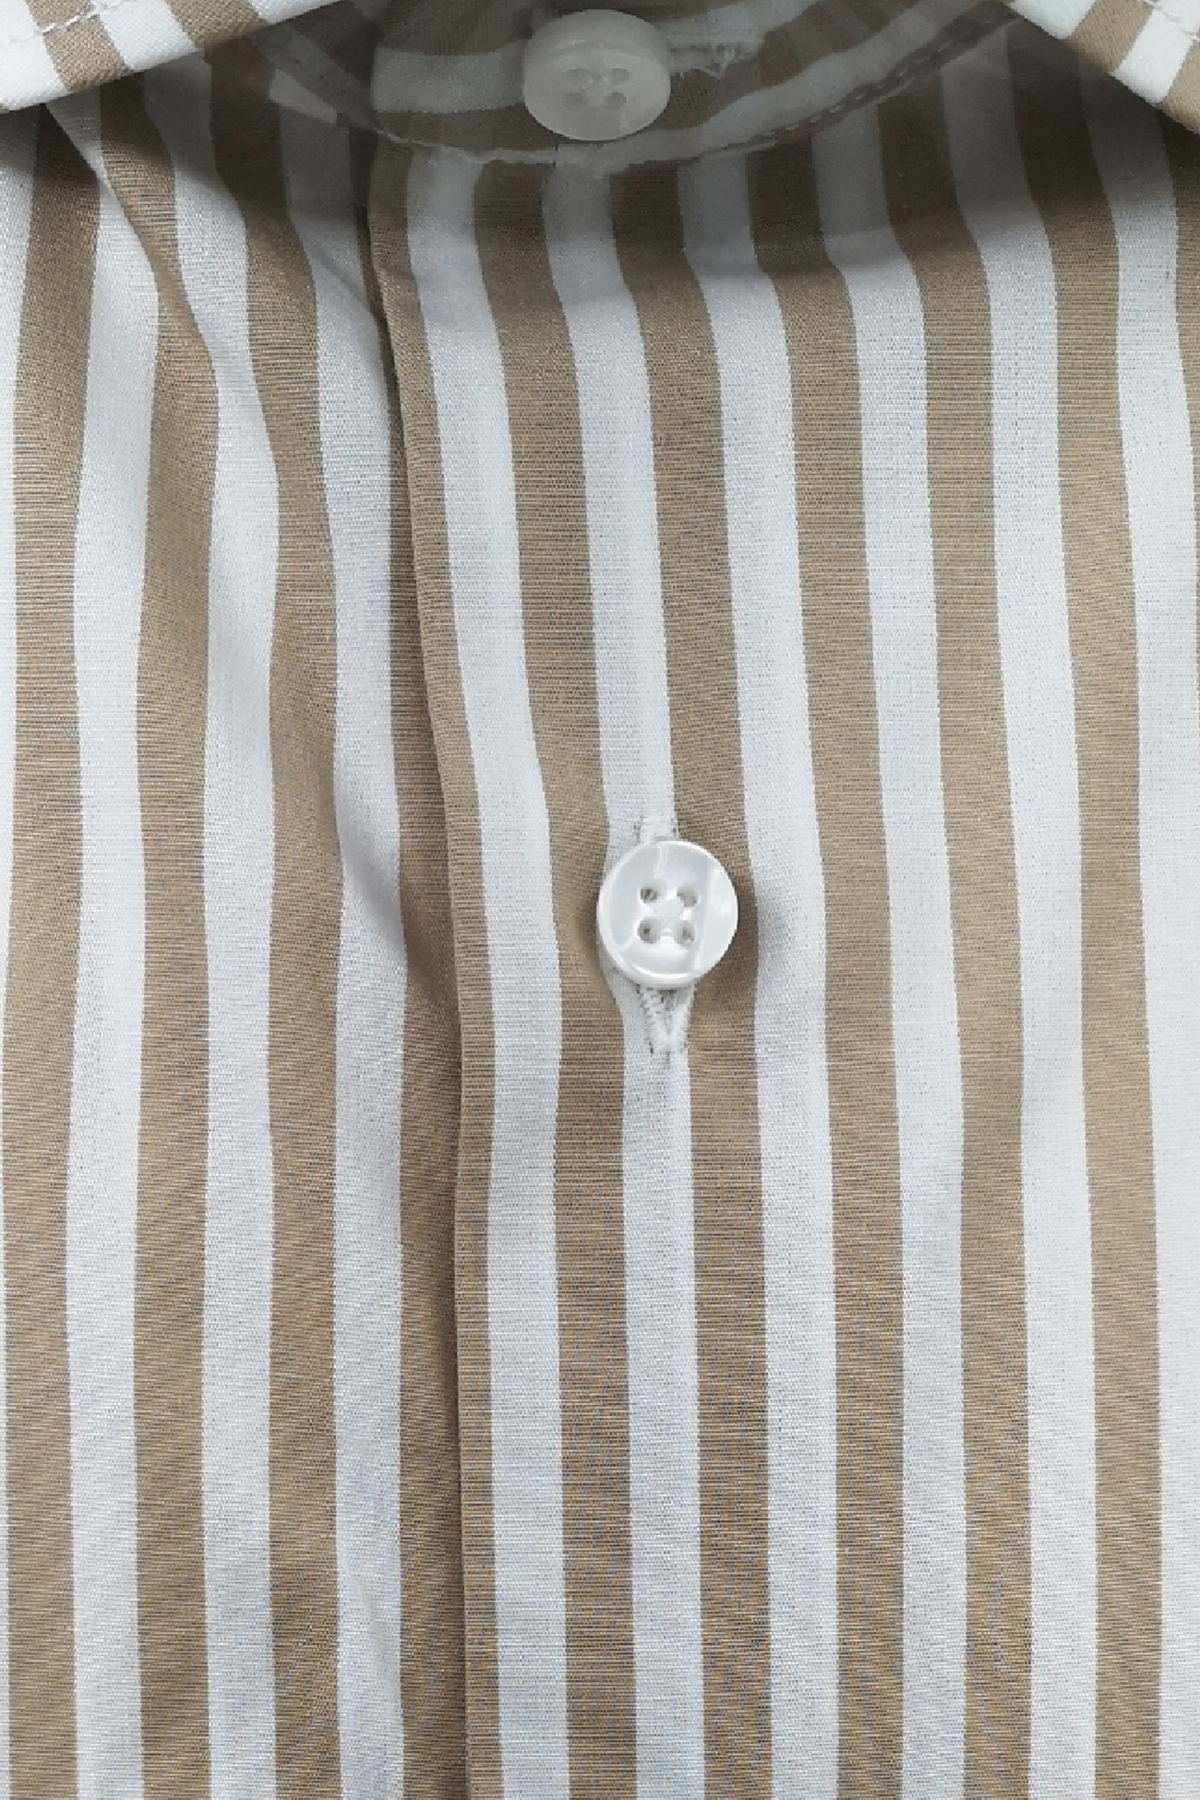 Camicia Uomo riga media 100% cotone collo semi francese Regular Fit made in italy Casual e Elegante